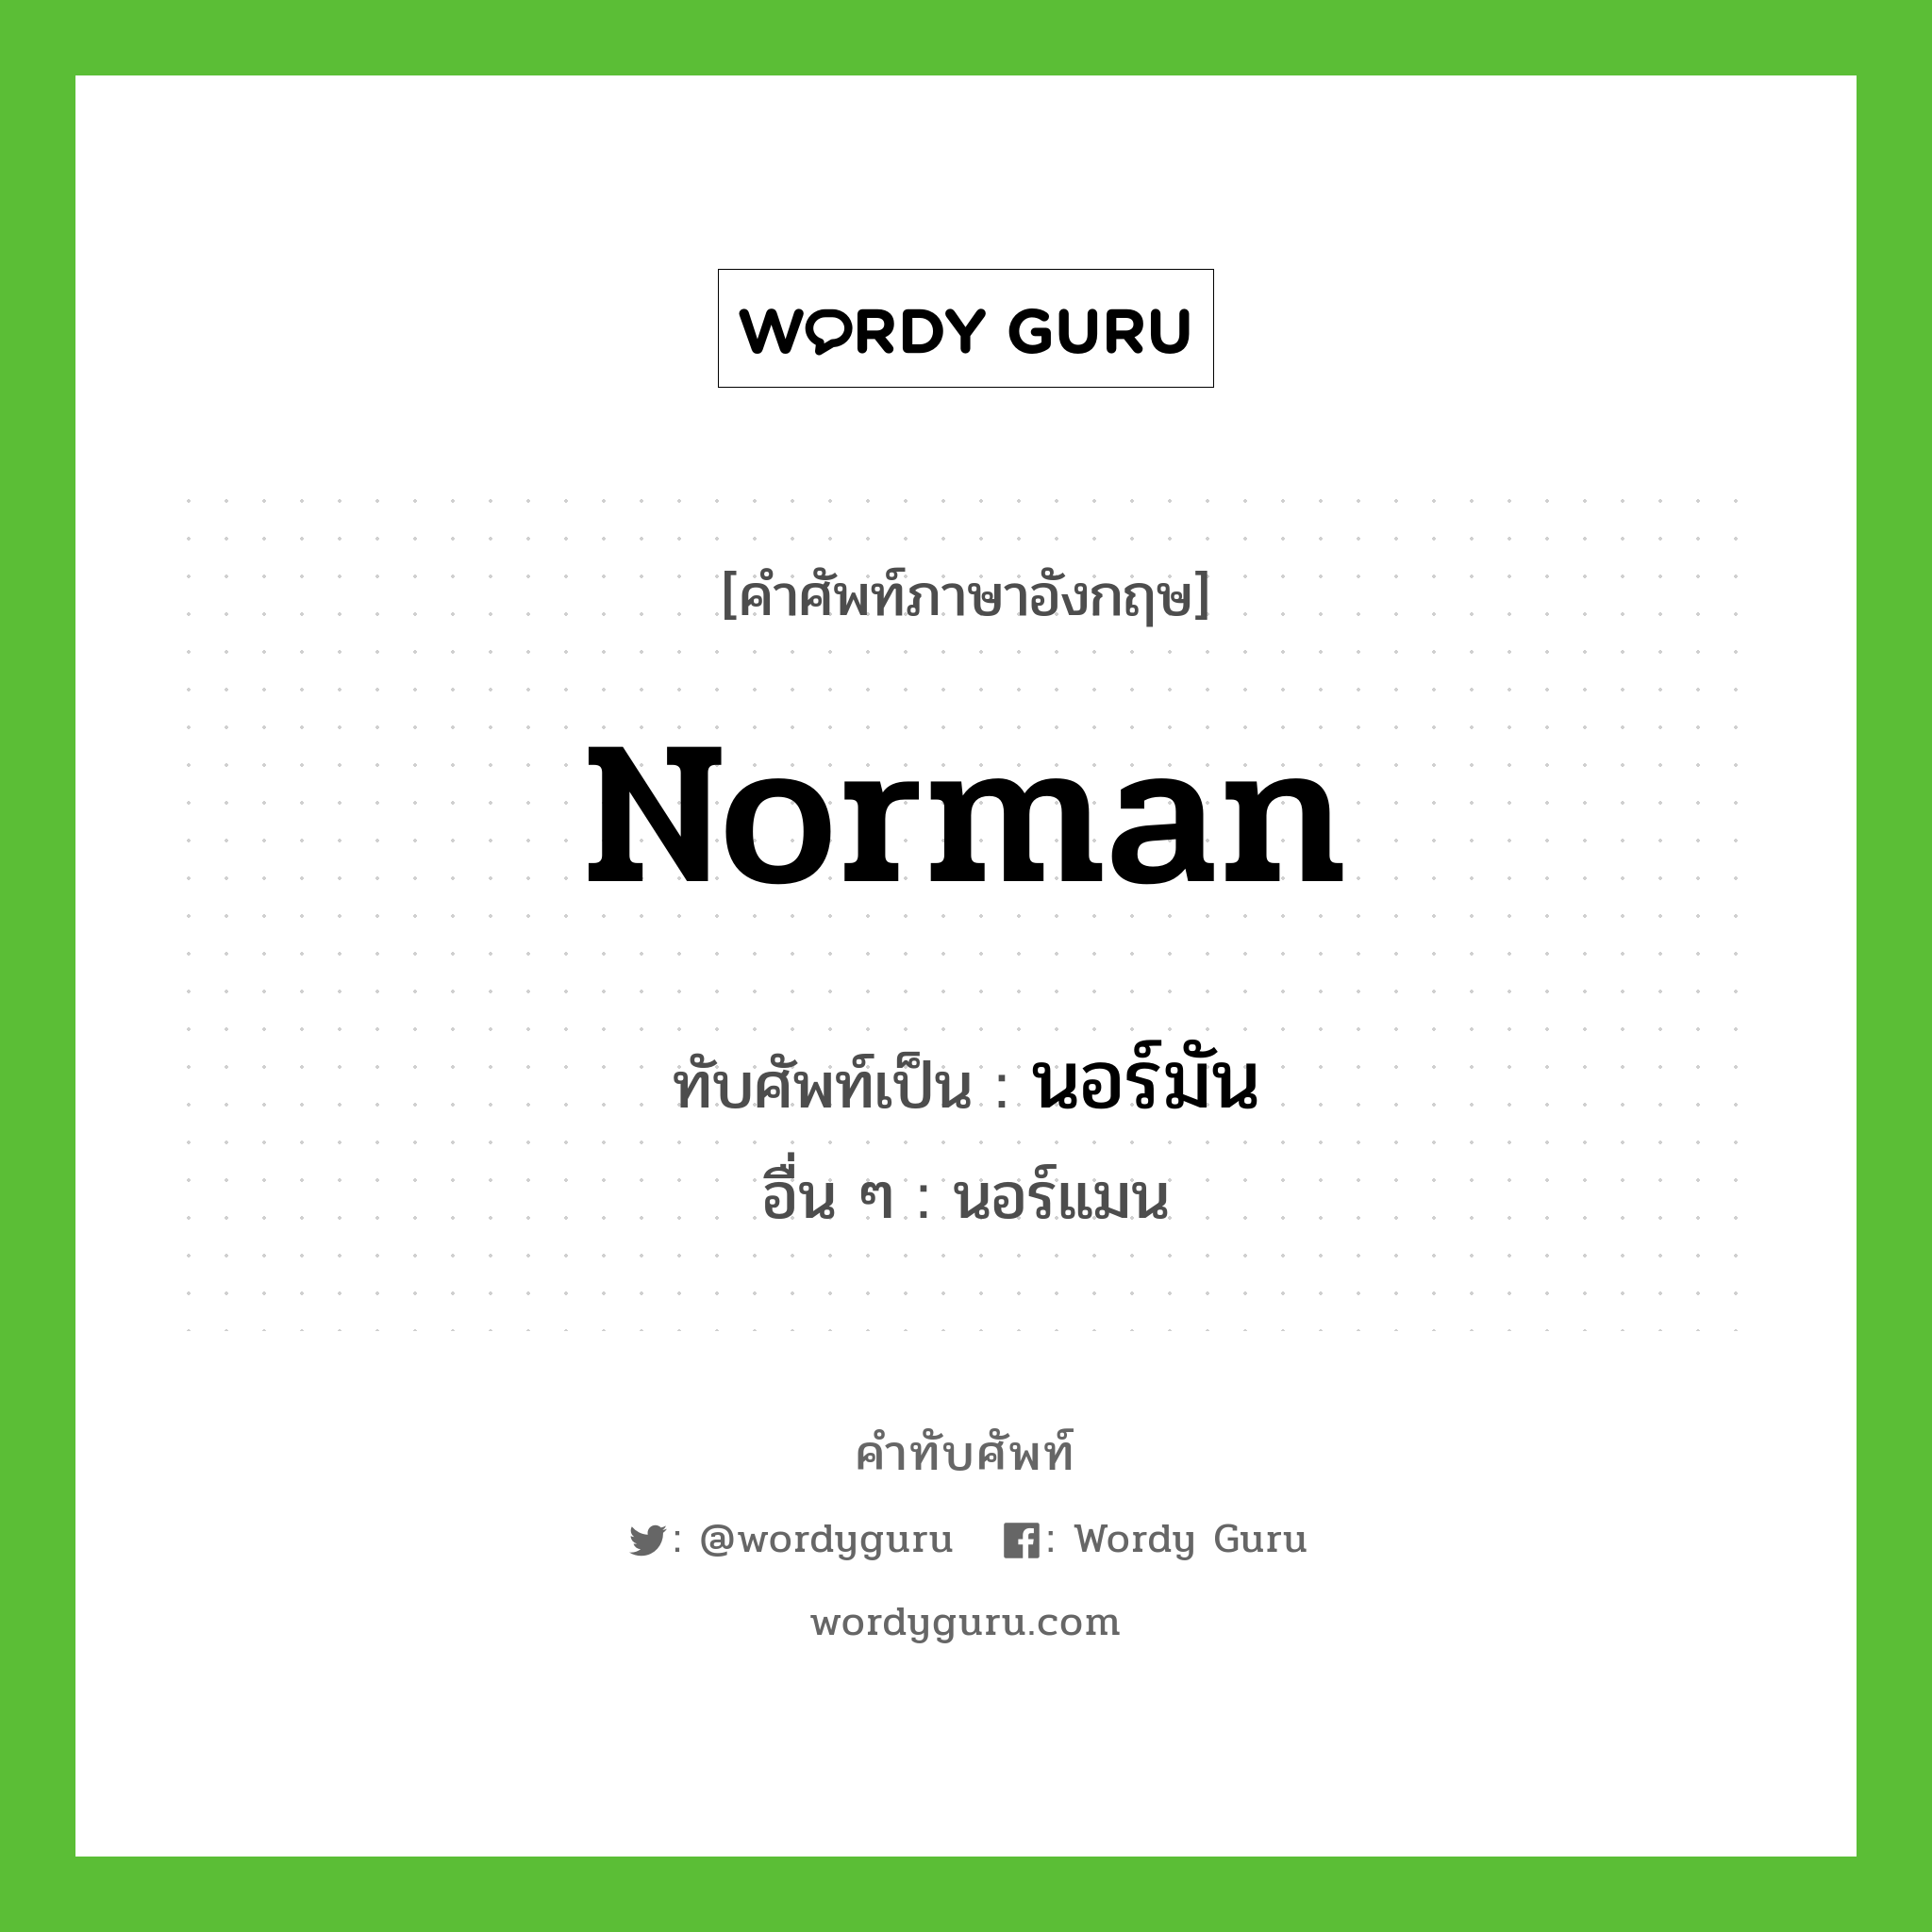 นอร์มัน เขียนอย่างไร?, คำศัพท์ภาษาอังกฤษ นอร์มัน ทับศัพท์เป็น Norman อื่น ๆ นอร์แมน